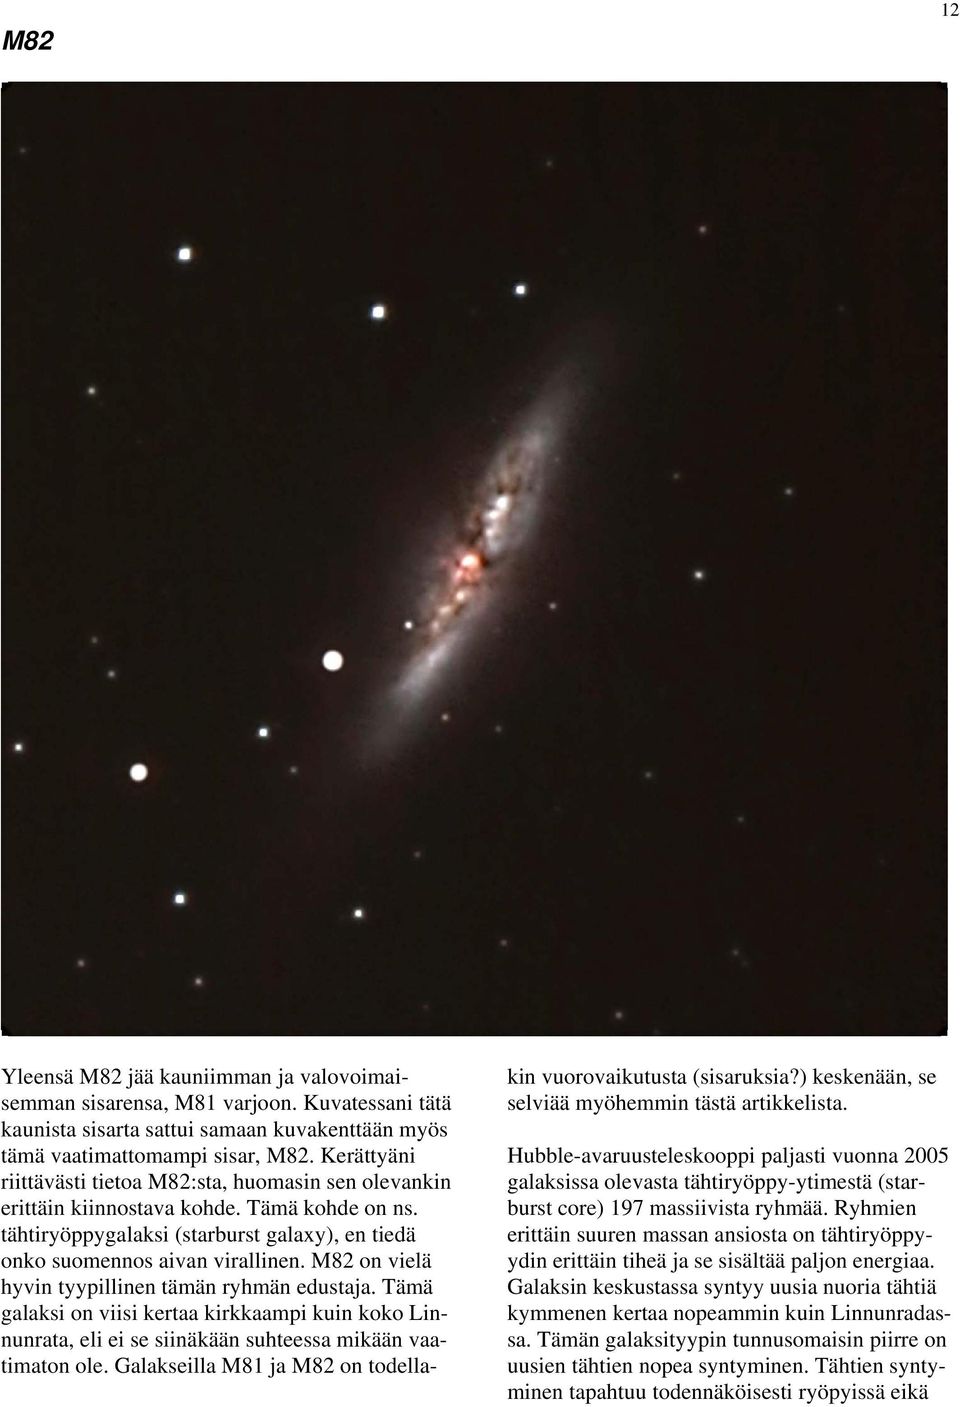 M82 on vielä hyvin tyypillinen tämän ryhmän edustaja. Tämä galaksi on viisi kertaa kirkkaampi kuin koko Linnunrata, eli ei se siinäkään suhteessa mikään vaatimaton ole.